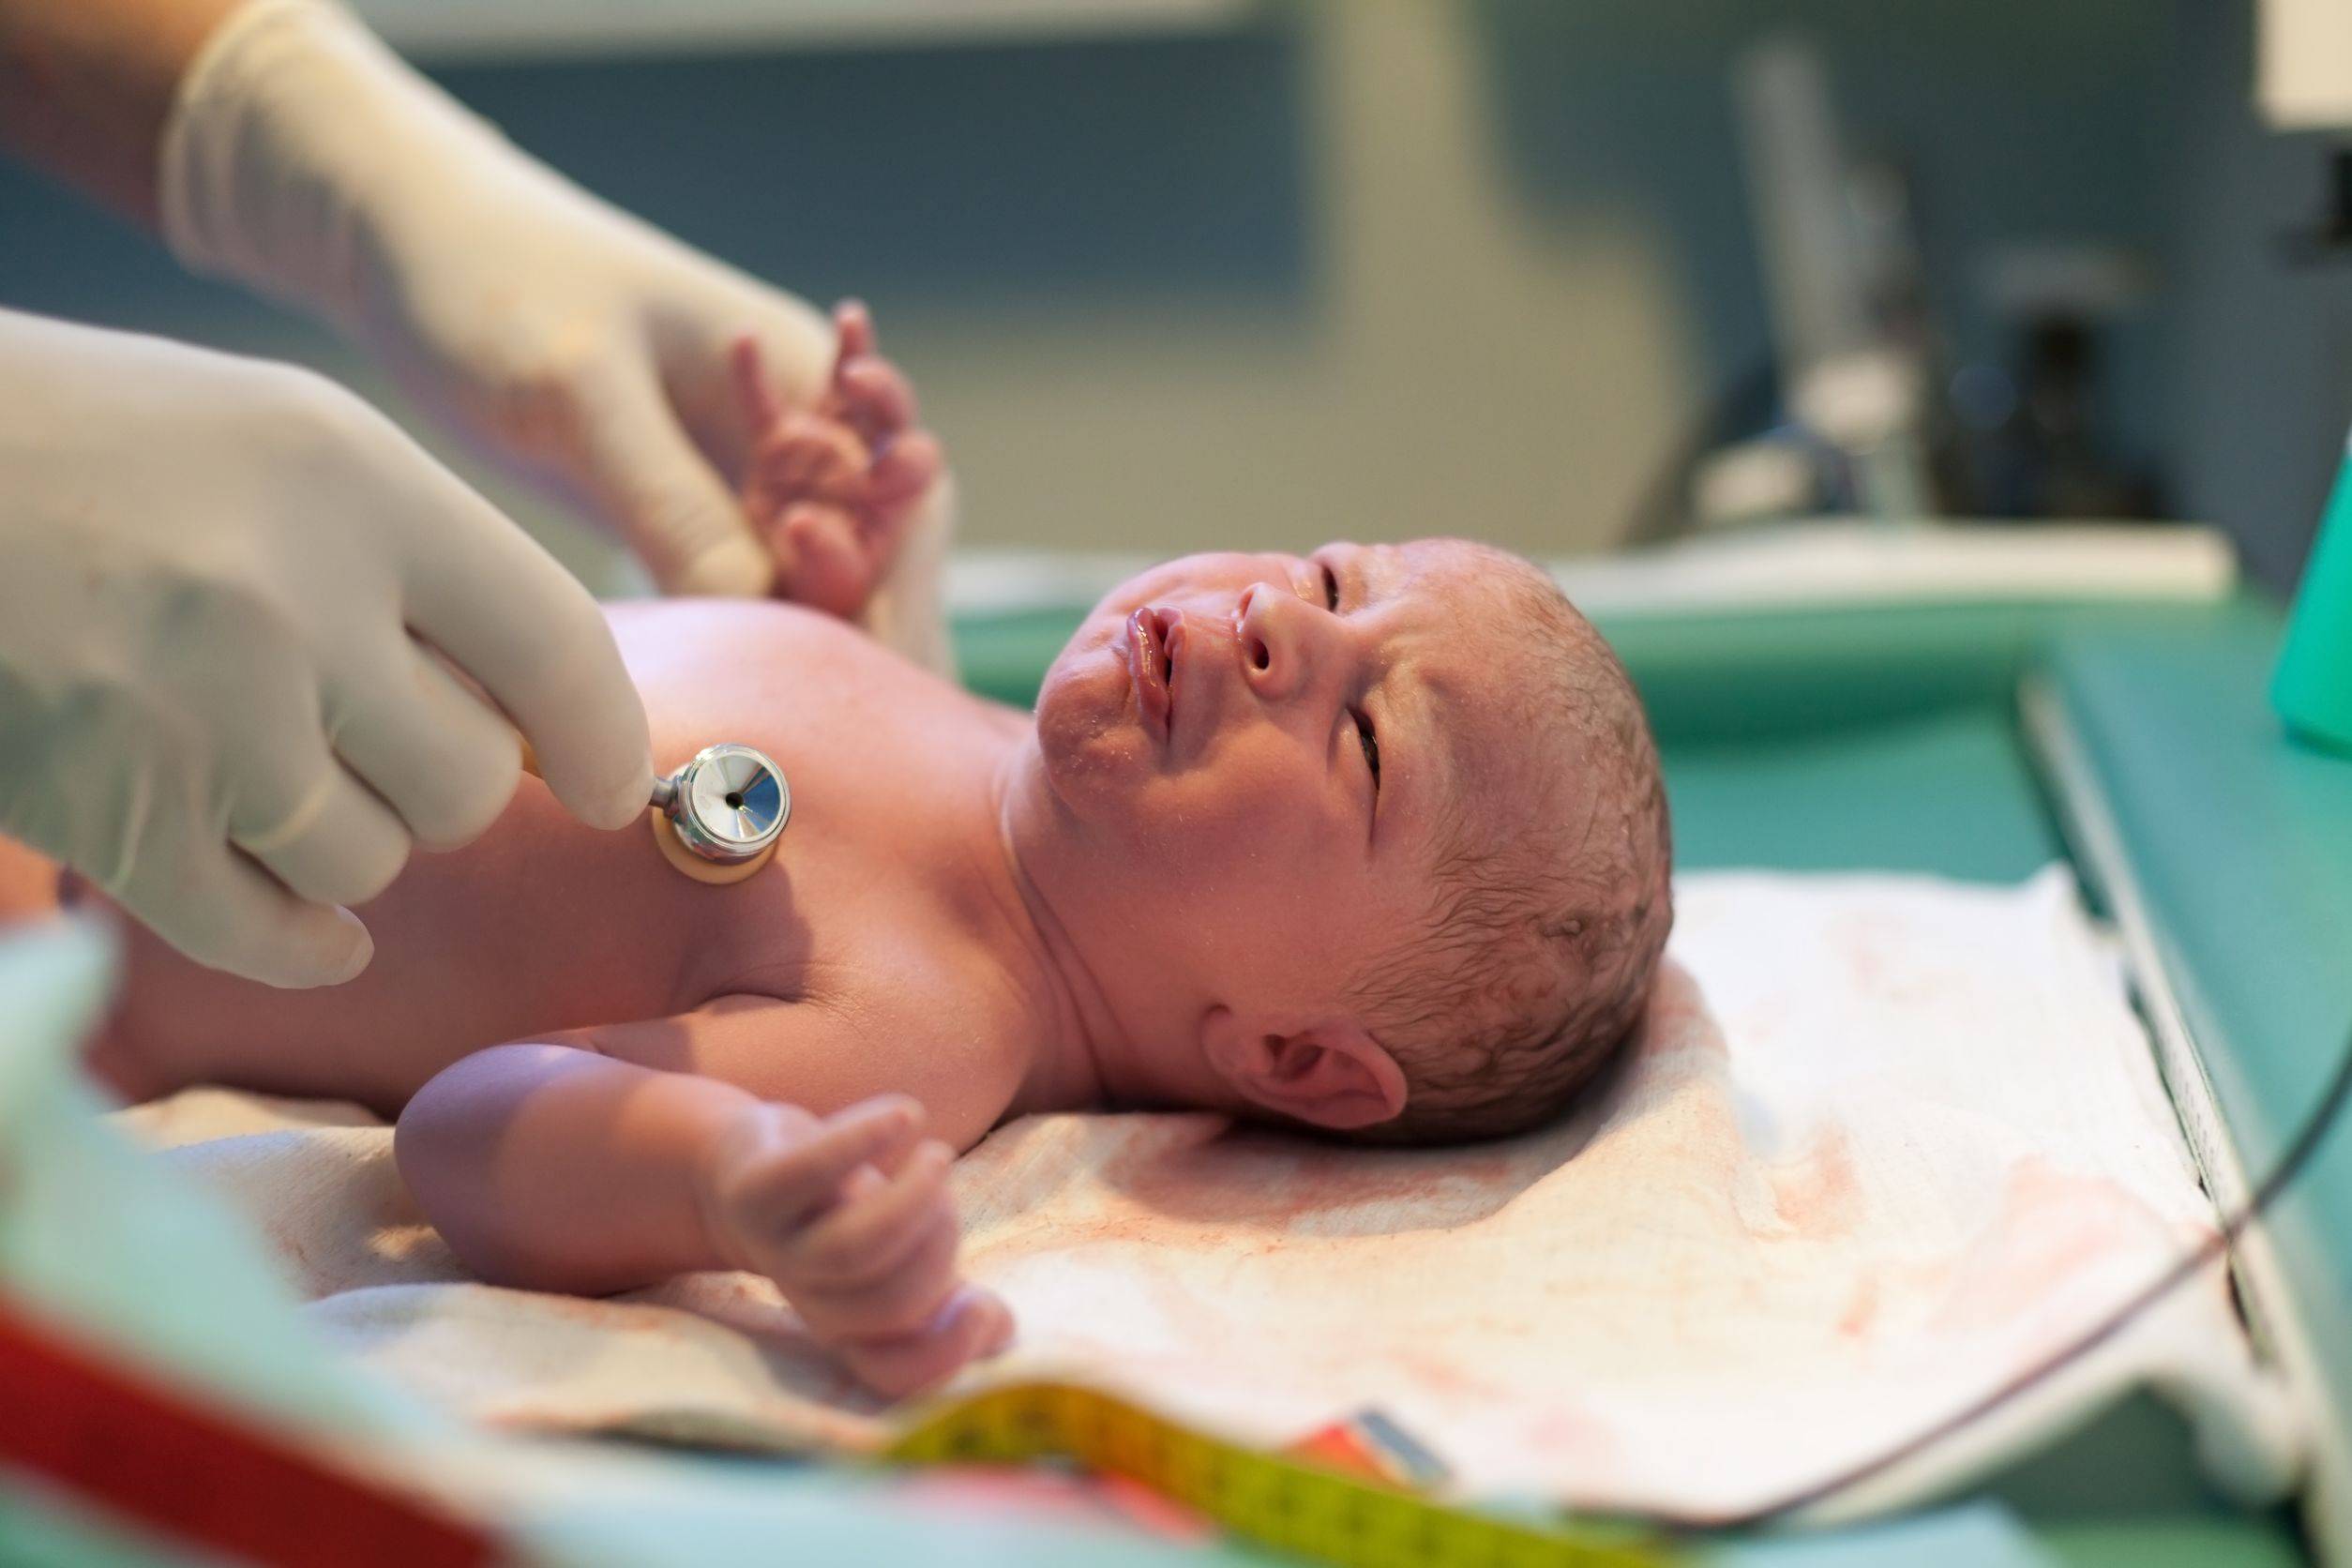 Пневмония у новорожденных: причины и последствия